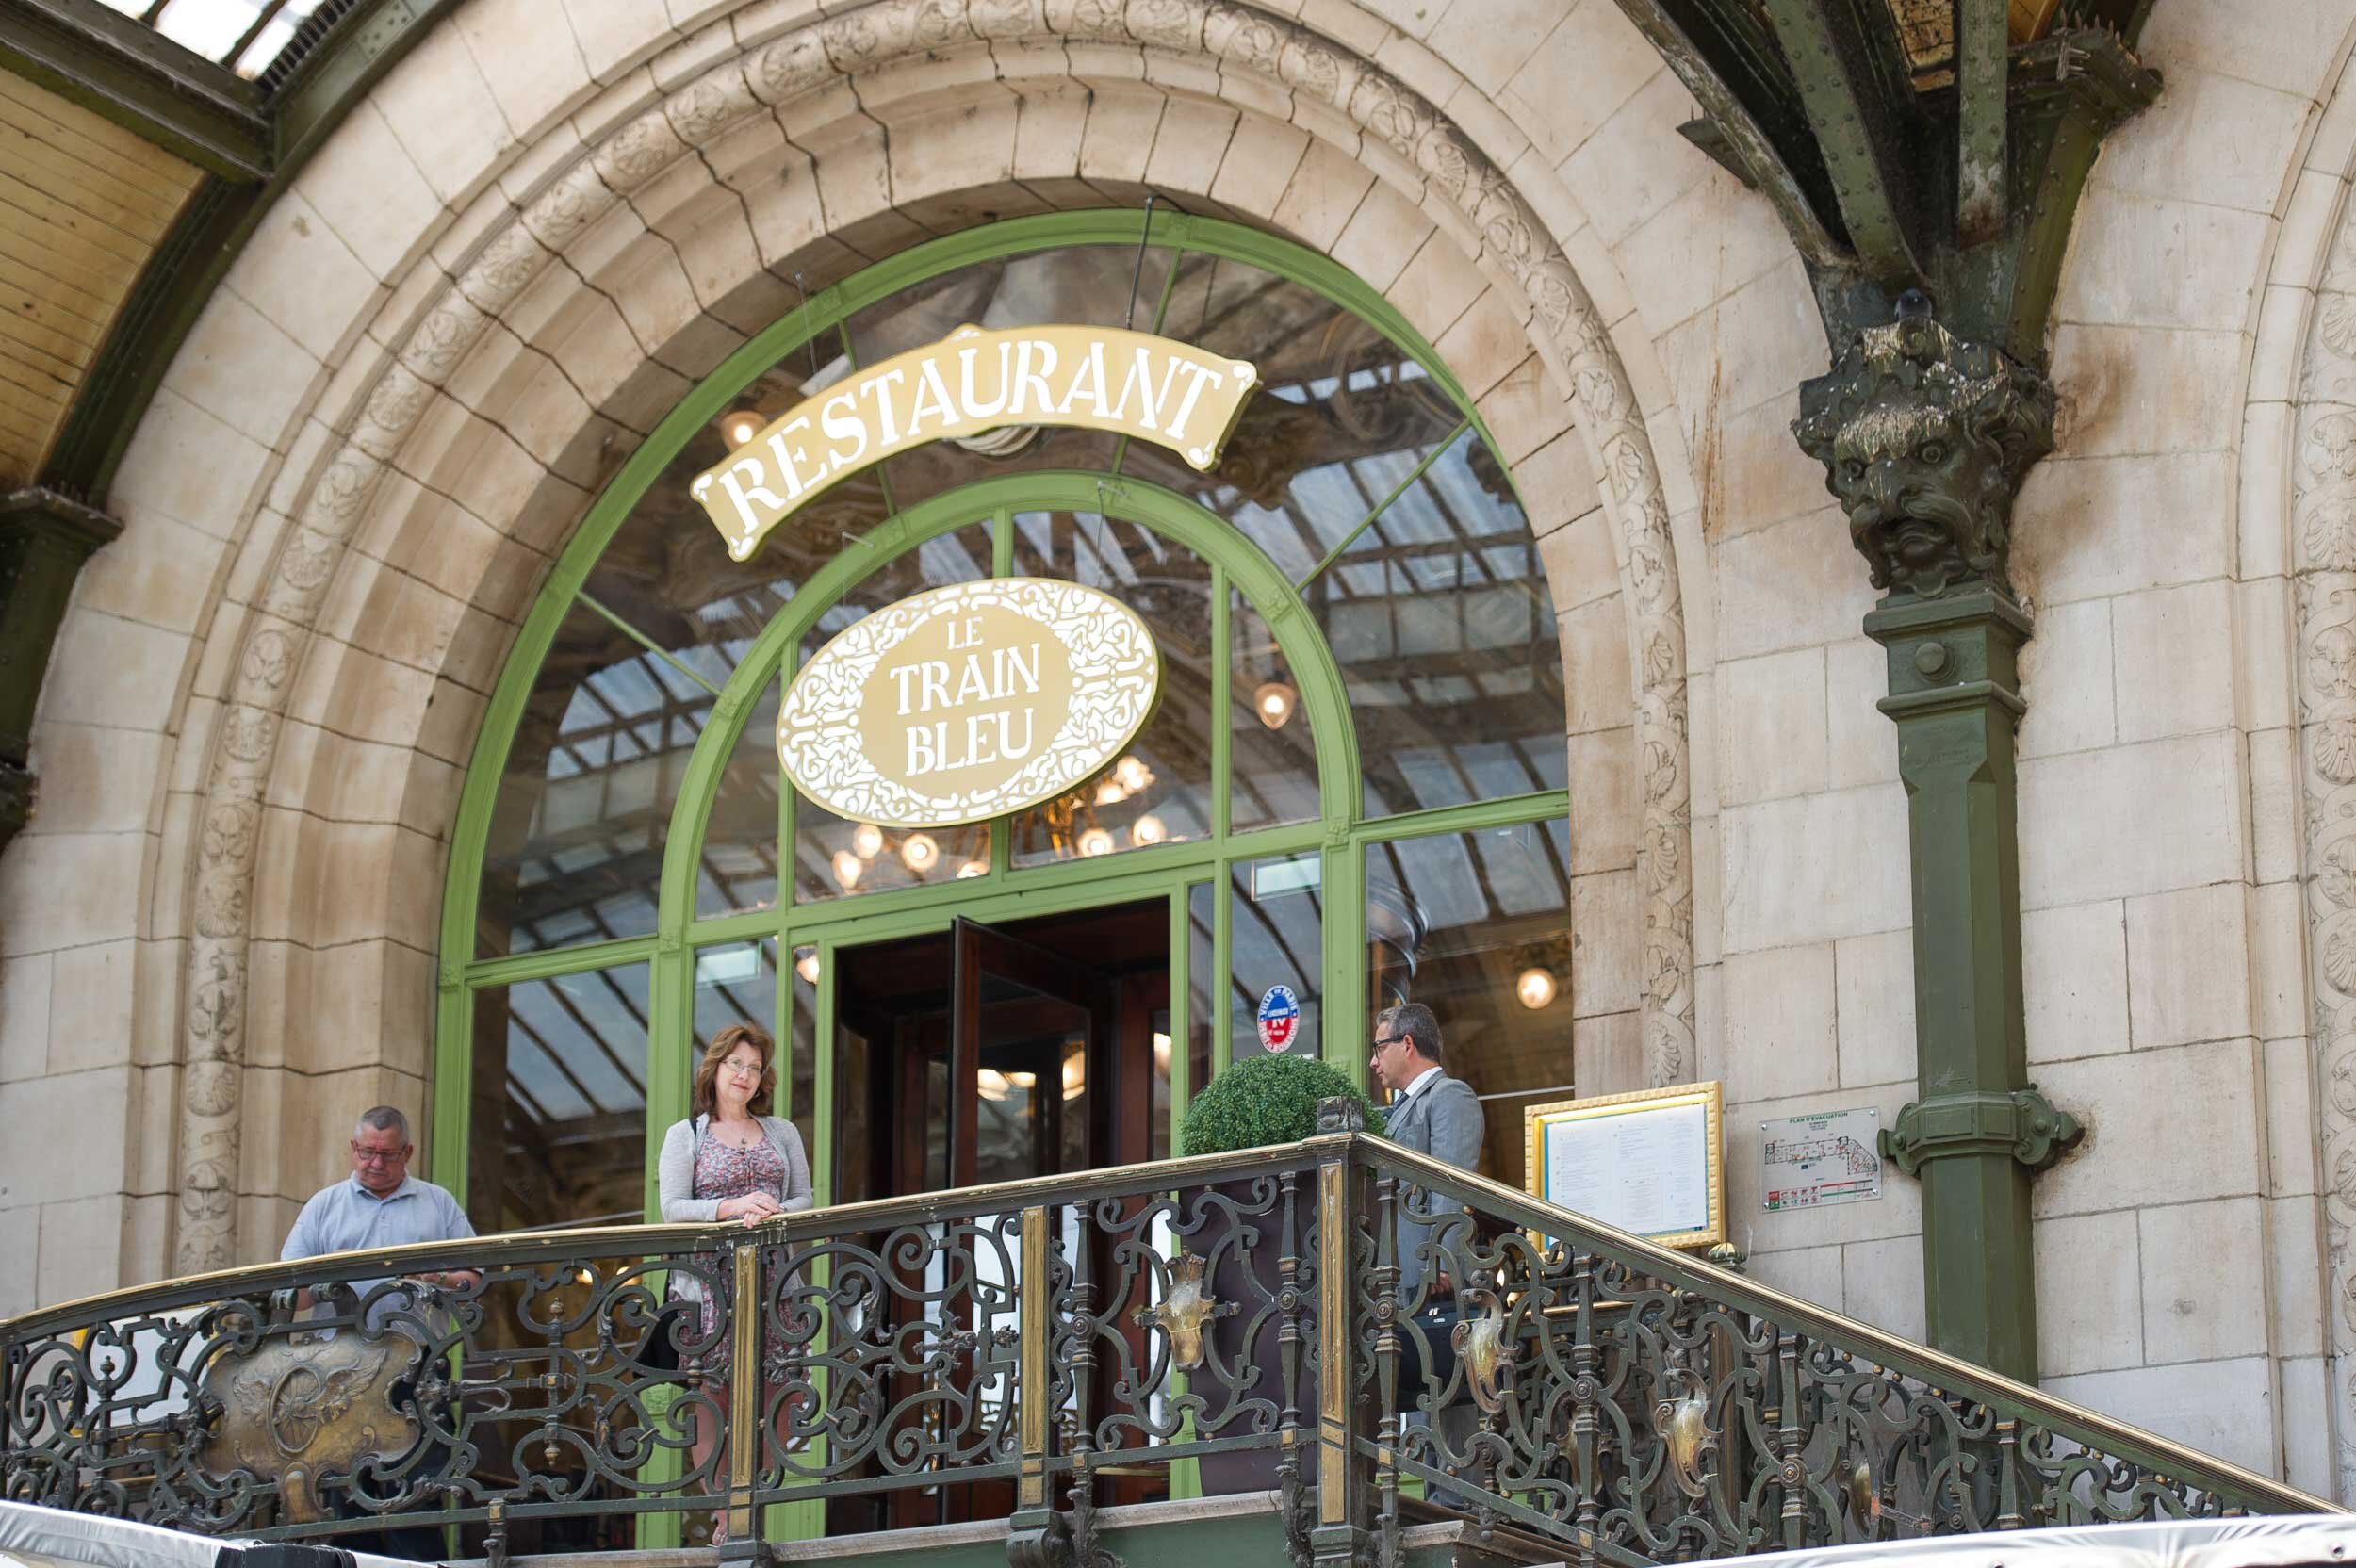 The famous Train Bleu restaurant at Paris Gare de Lyon